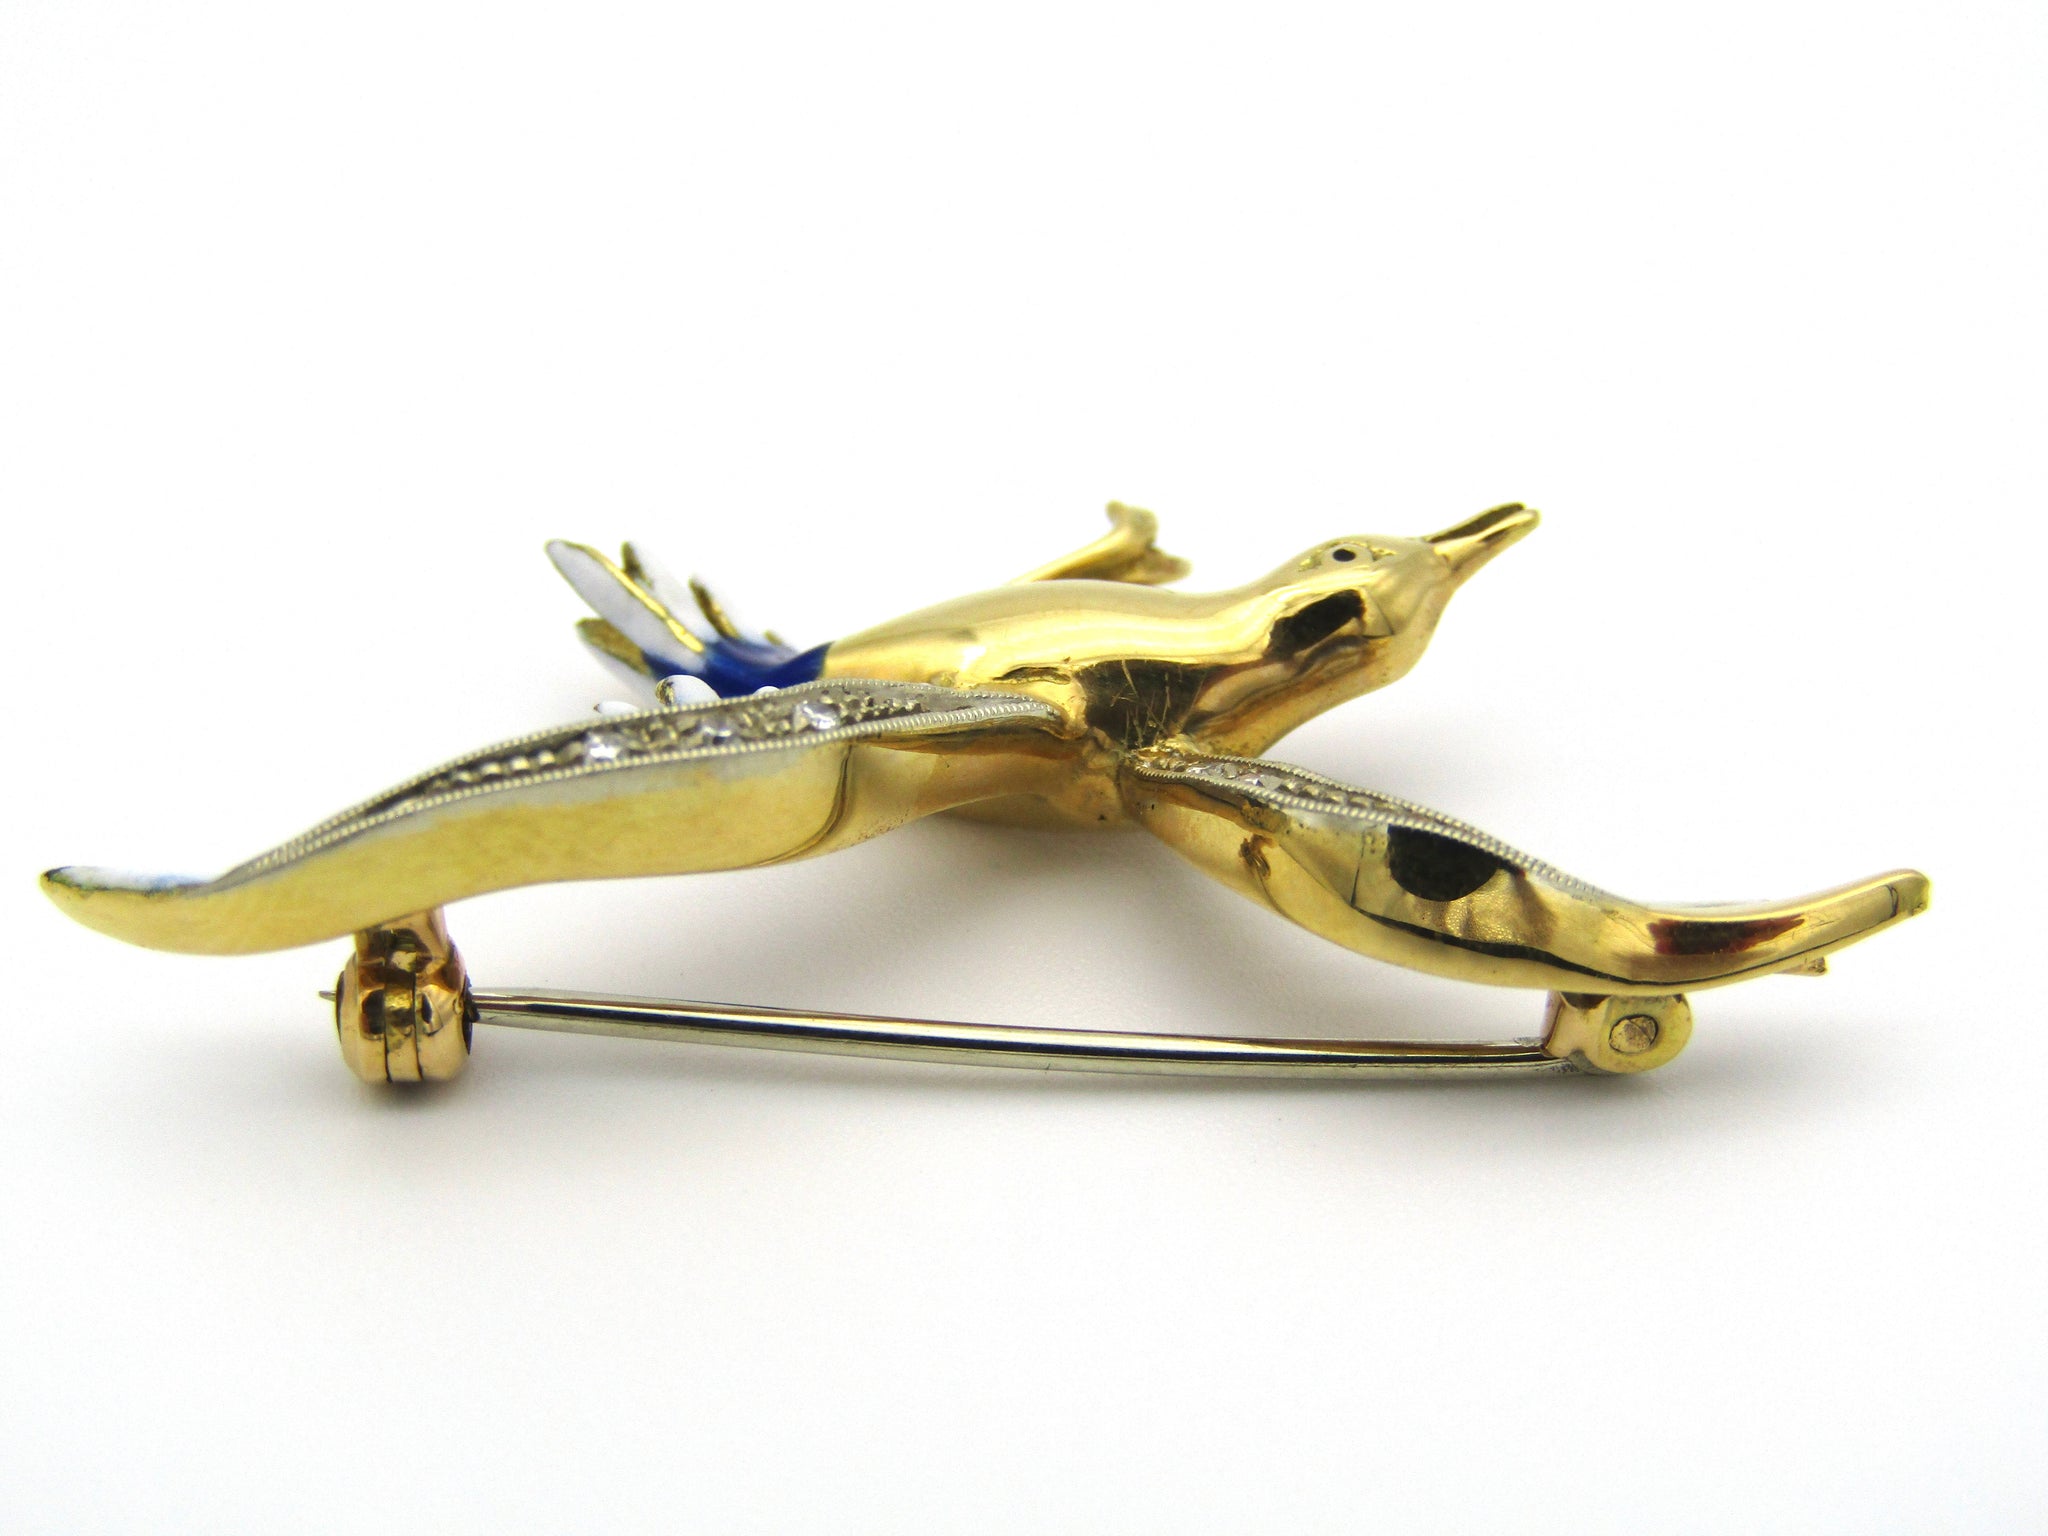 18kt gold diamond and enamel "Bird in flight" brooch.